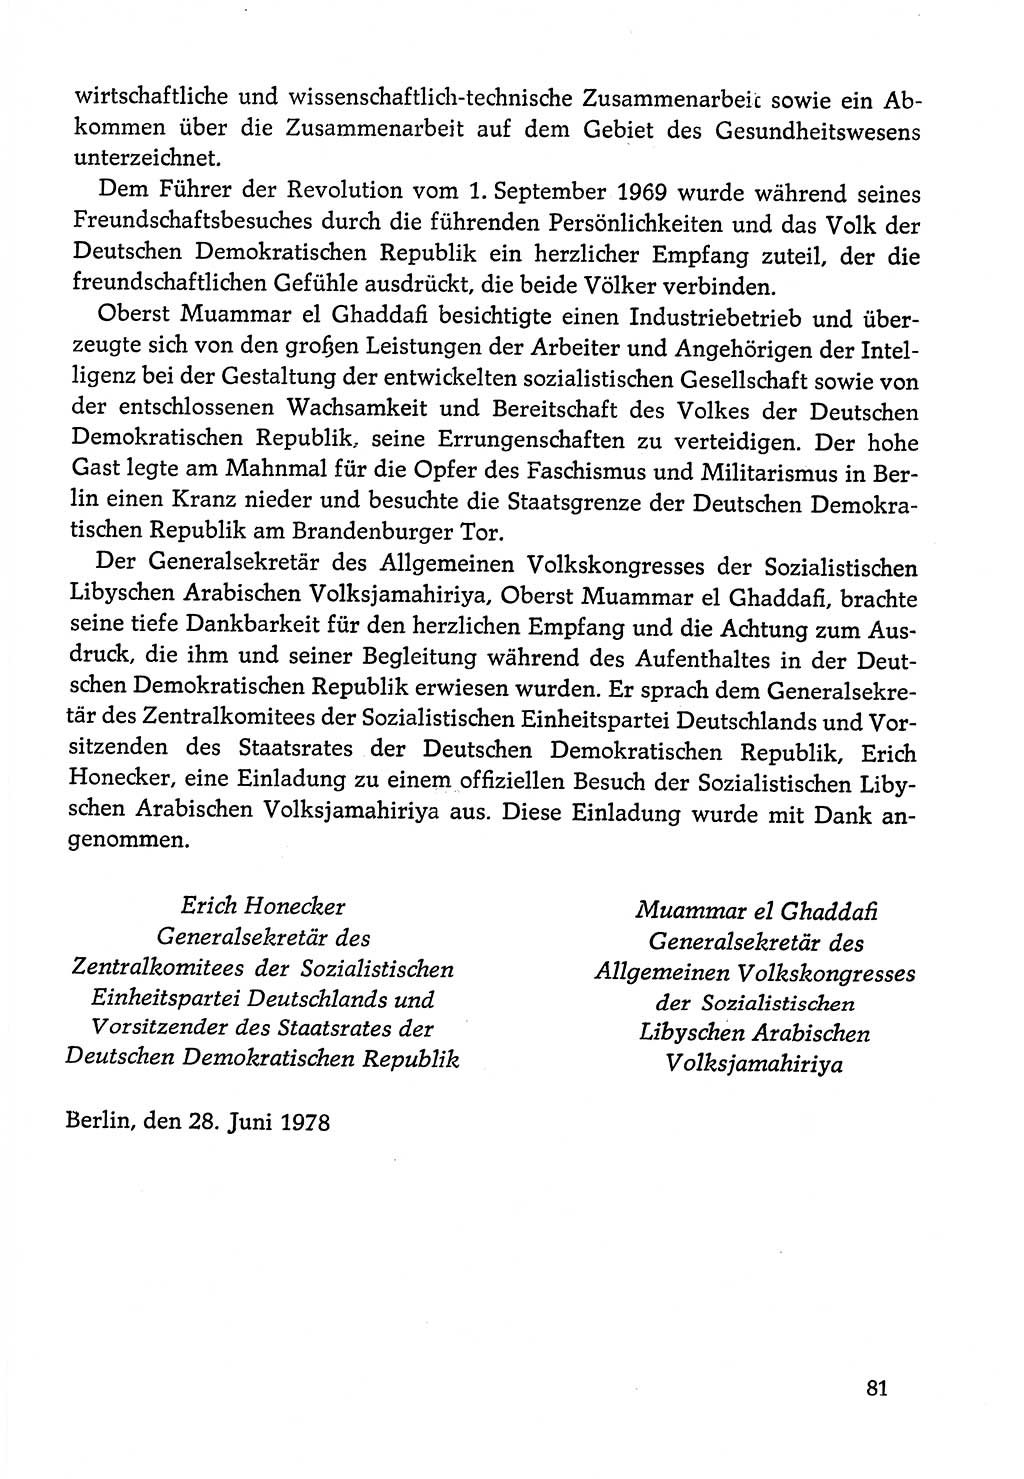 Dokumente der Sozialistischen Einheitspartei Deutschlands (SED) [Deutsche Demokratische Republik (DDR)] 1978-1979, Seite 81 (Dok. SED DDR 1978-1979, S. 81)